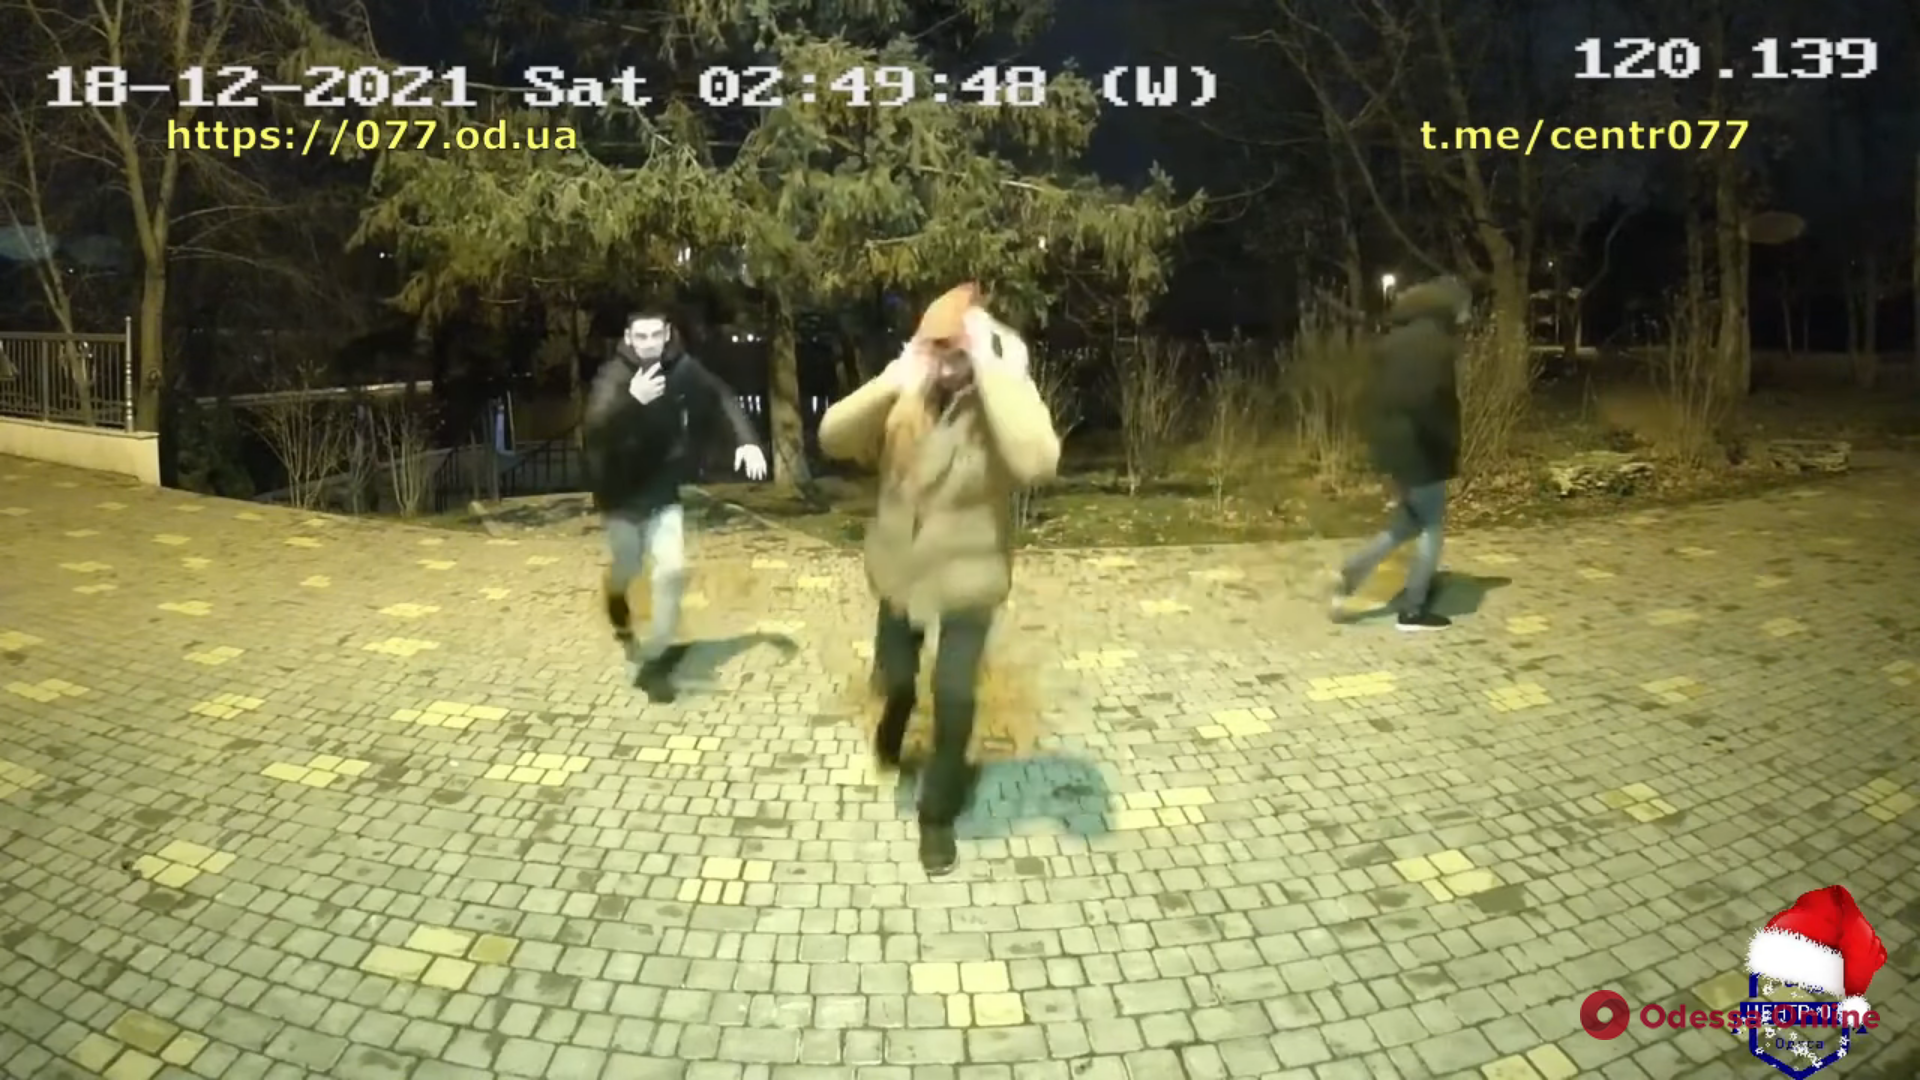 Пытался «пробить» головой: в одесском парке Победы хулиган напал на стелу с видеокамерами (видео)